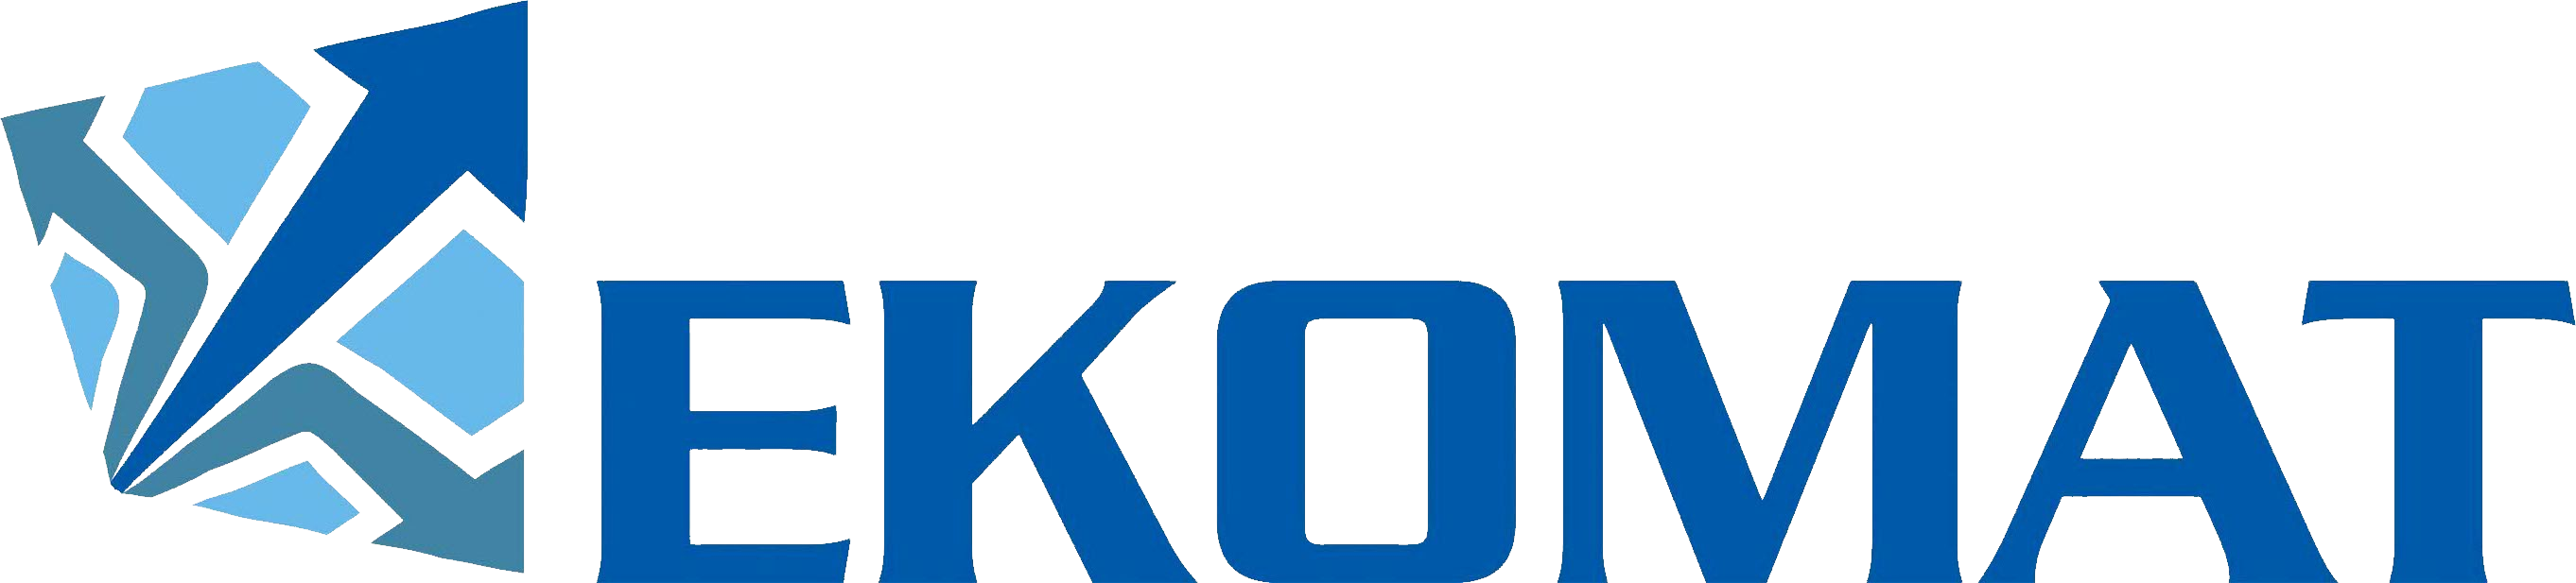 Ekomat_logo